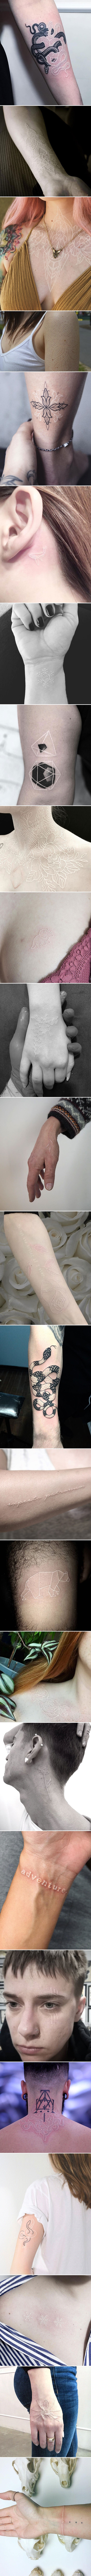 25 prelijepih crno-bijelih tetovaža koje dokazuju da za ukrašavanje tijela nisu potrebne šarene boje